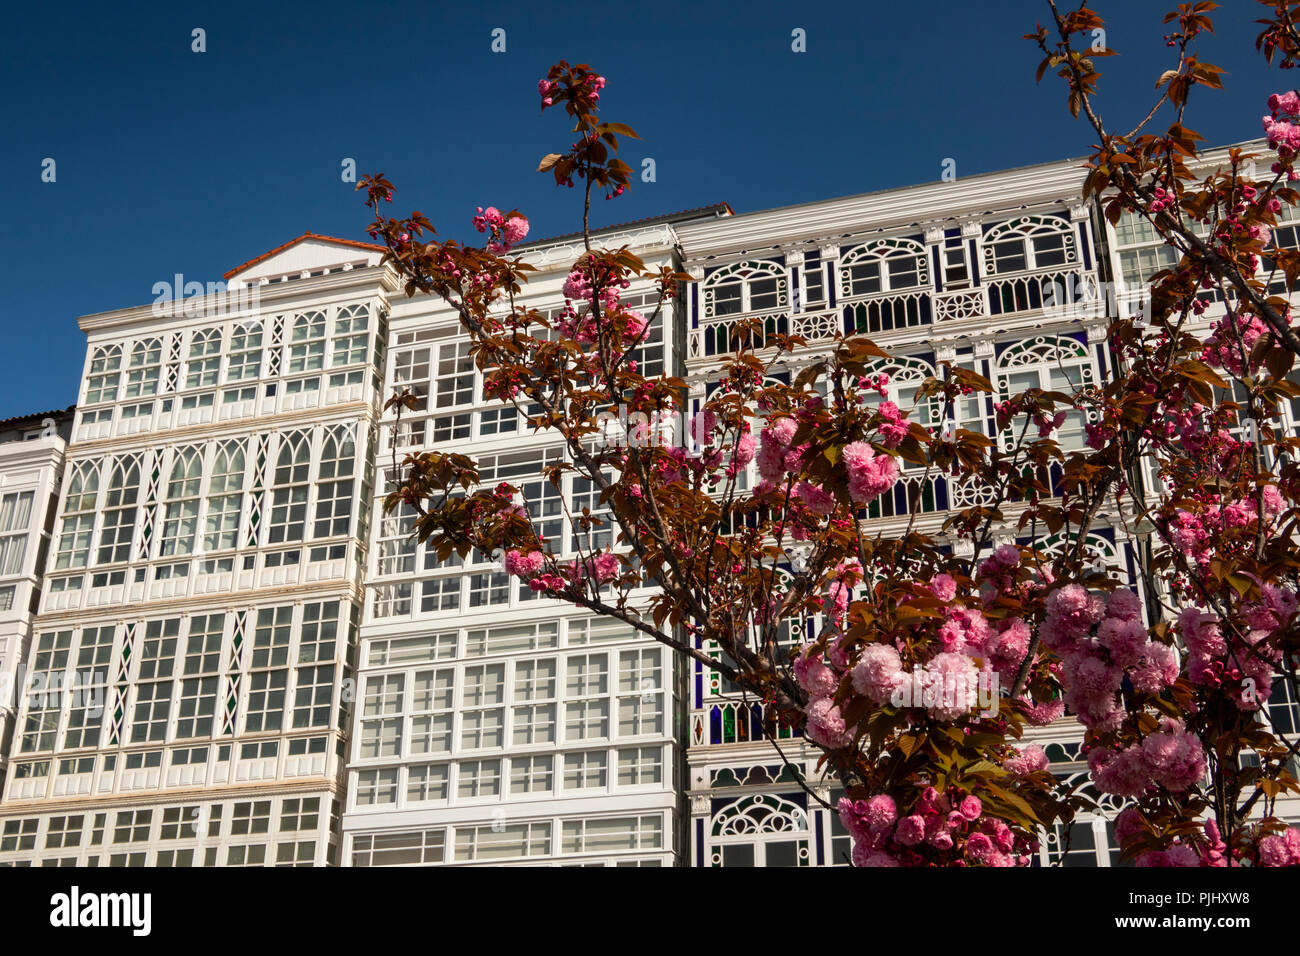 Spanien, Galizien, A Coruña, ornamentalen Kirschbaum in Blüte und charakteristischen hohen Verglasten waterfront Gebäude Stockfoto